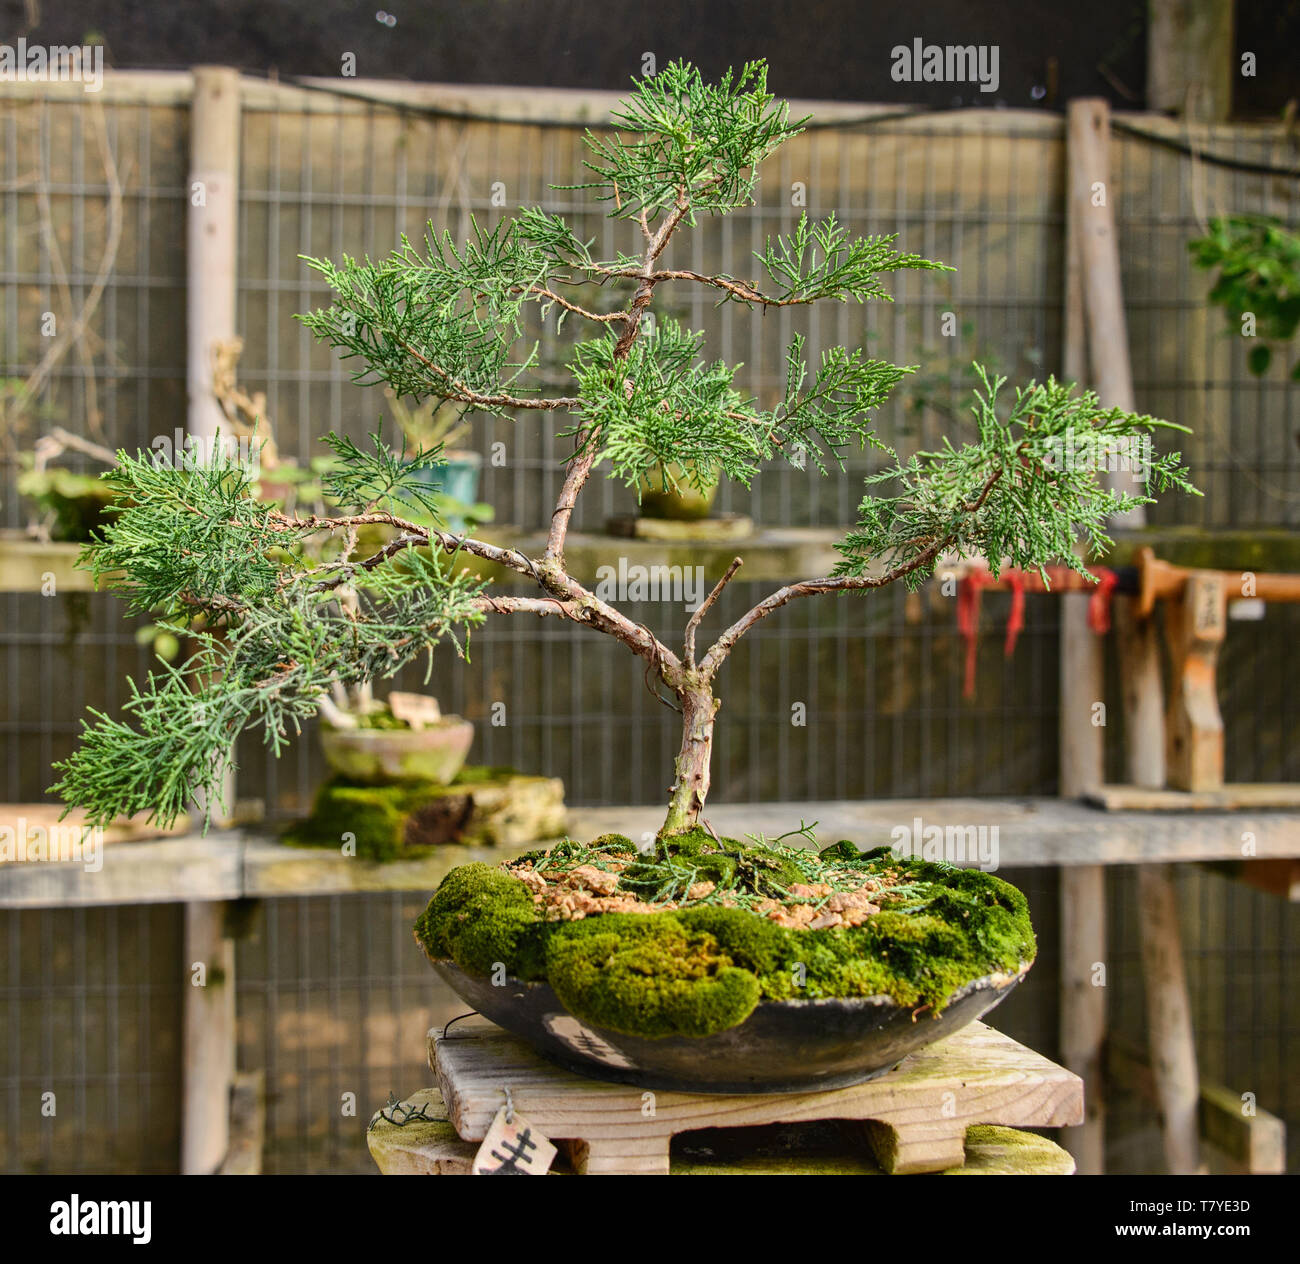 Bonsai tree in the Jardin de Corazon Japanese garden, La Serena, Chile Stock Photo